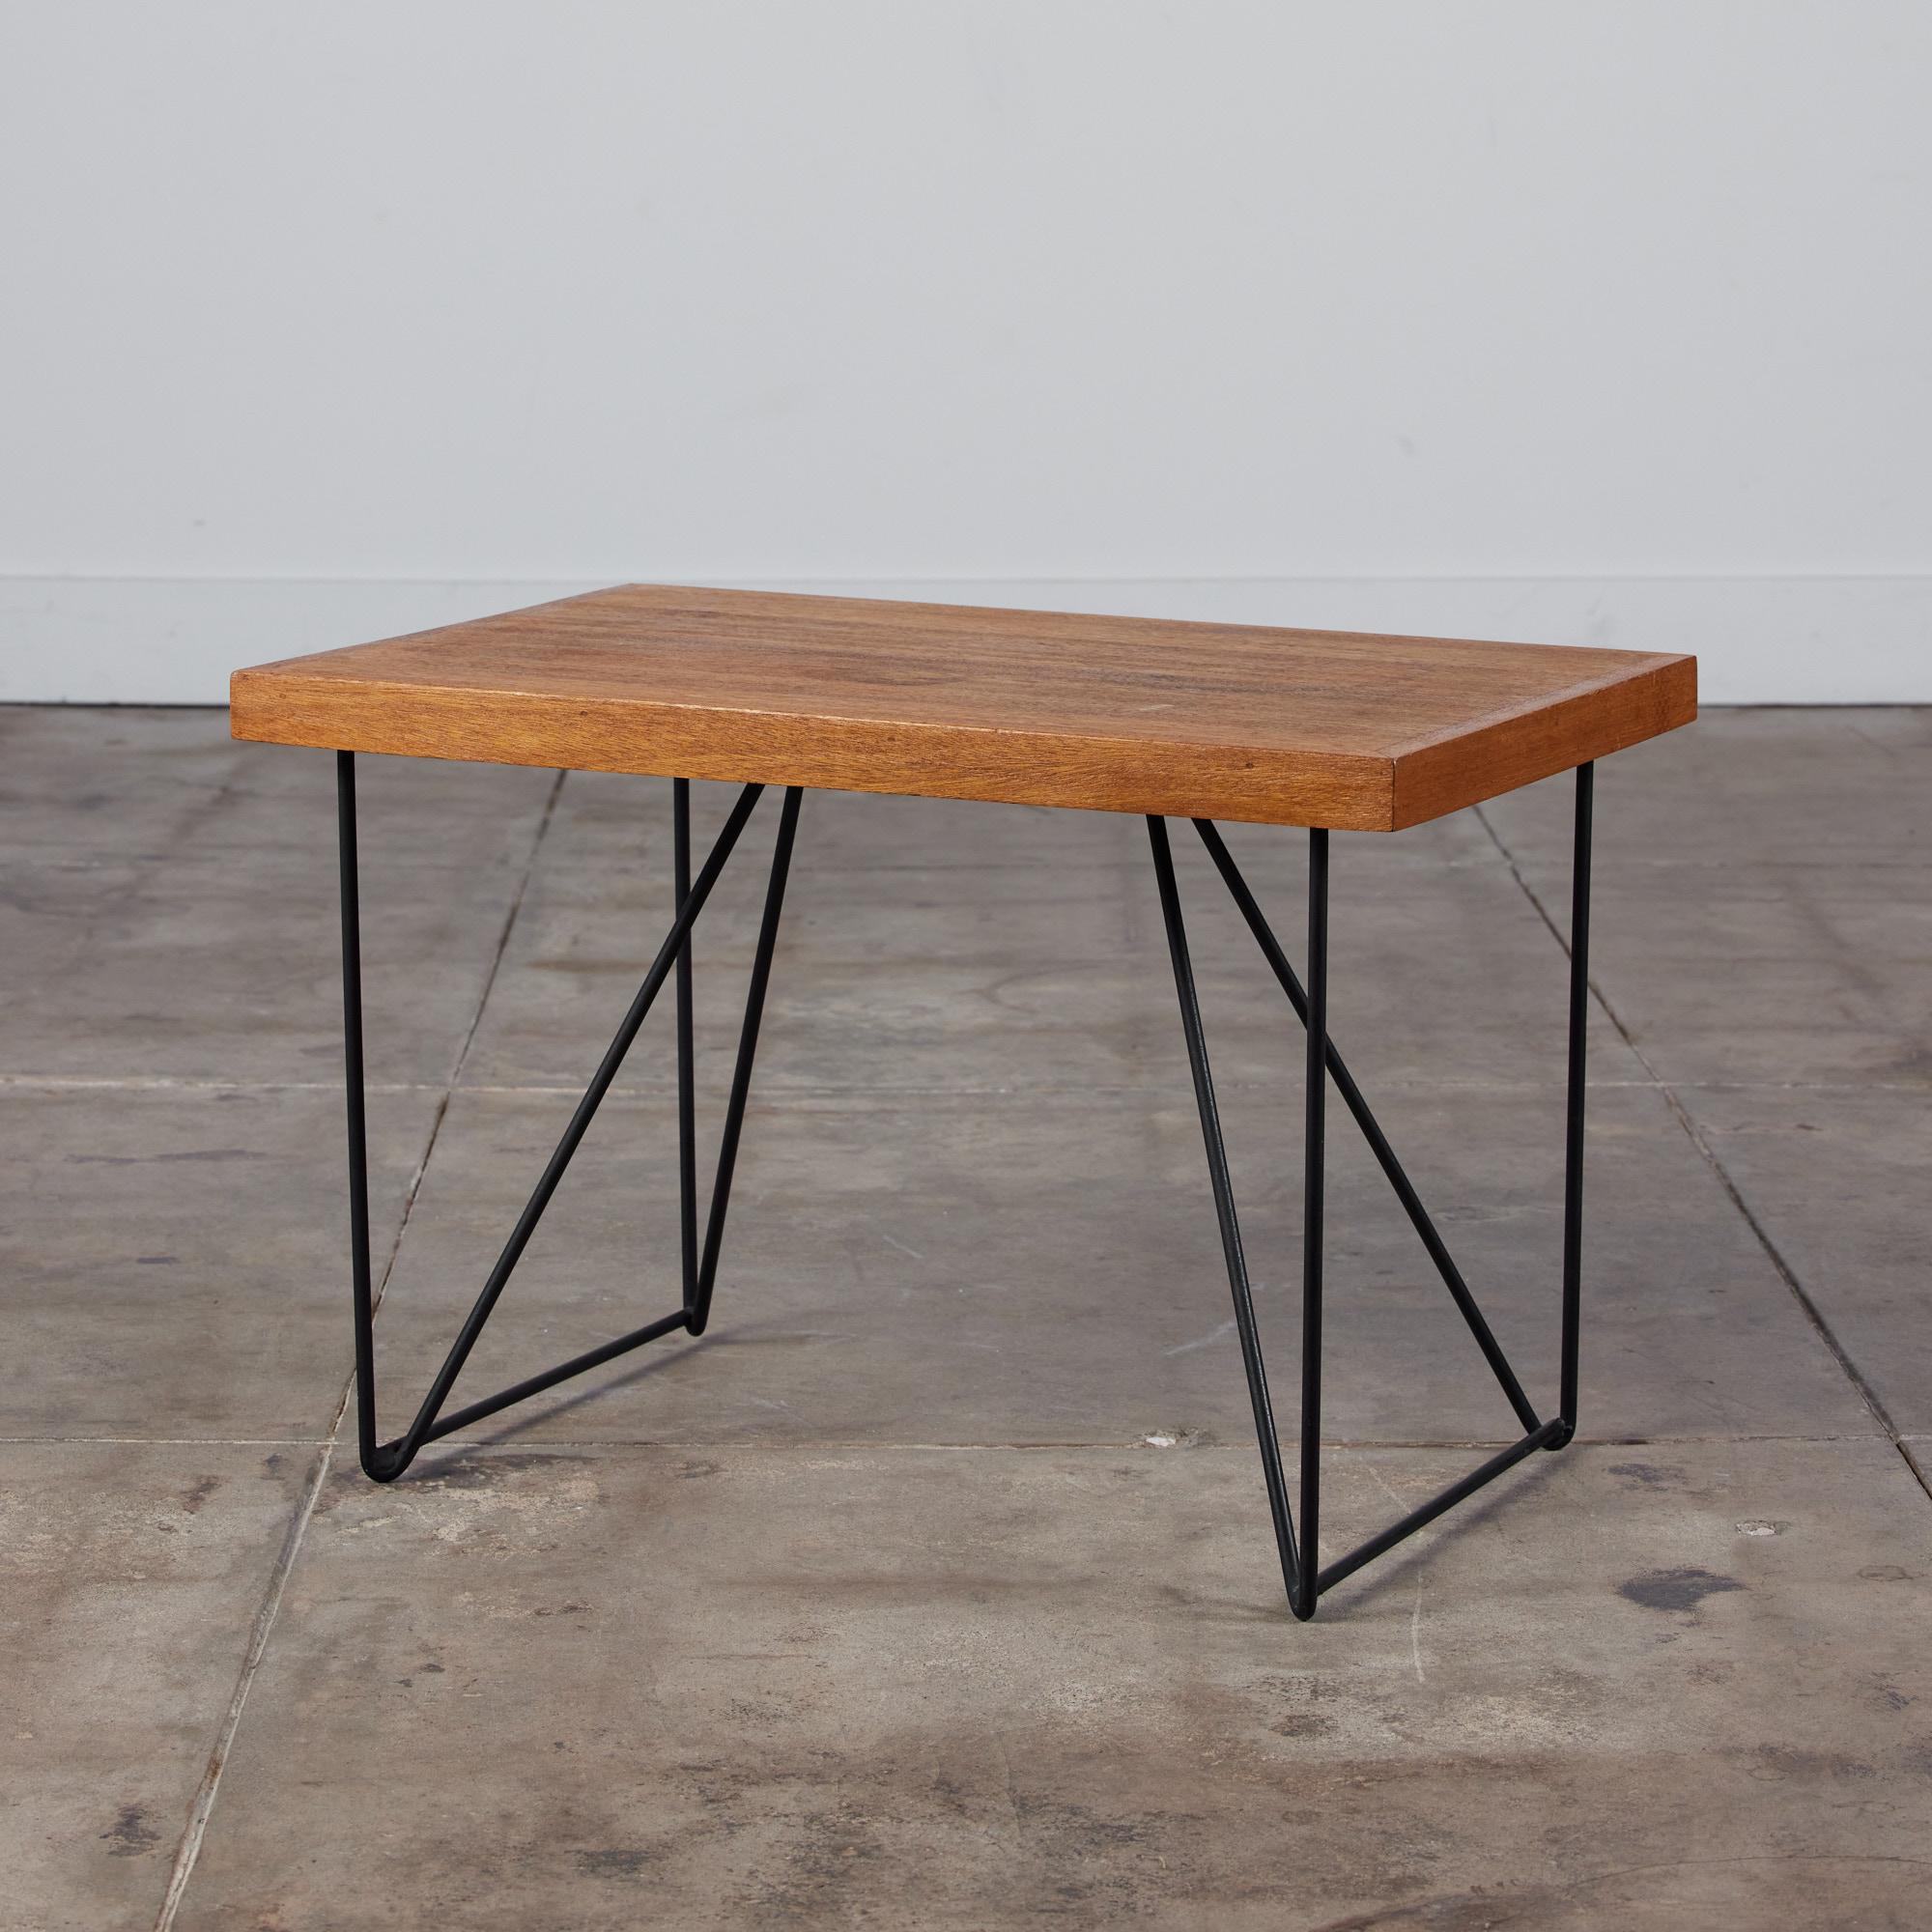 Un design de Luther Conover pour Pacifica c.1950s, USA. Cette table se caractérise par un plateau rectangulaire en acajou posé sur des pieds en épingle à cheveux en fer. Un design simpliste qui peut facilement être utilisé à la fois comme table